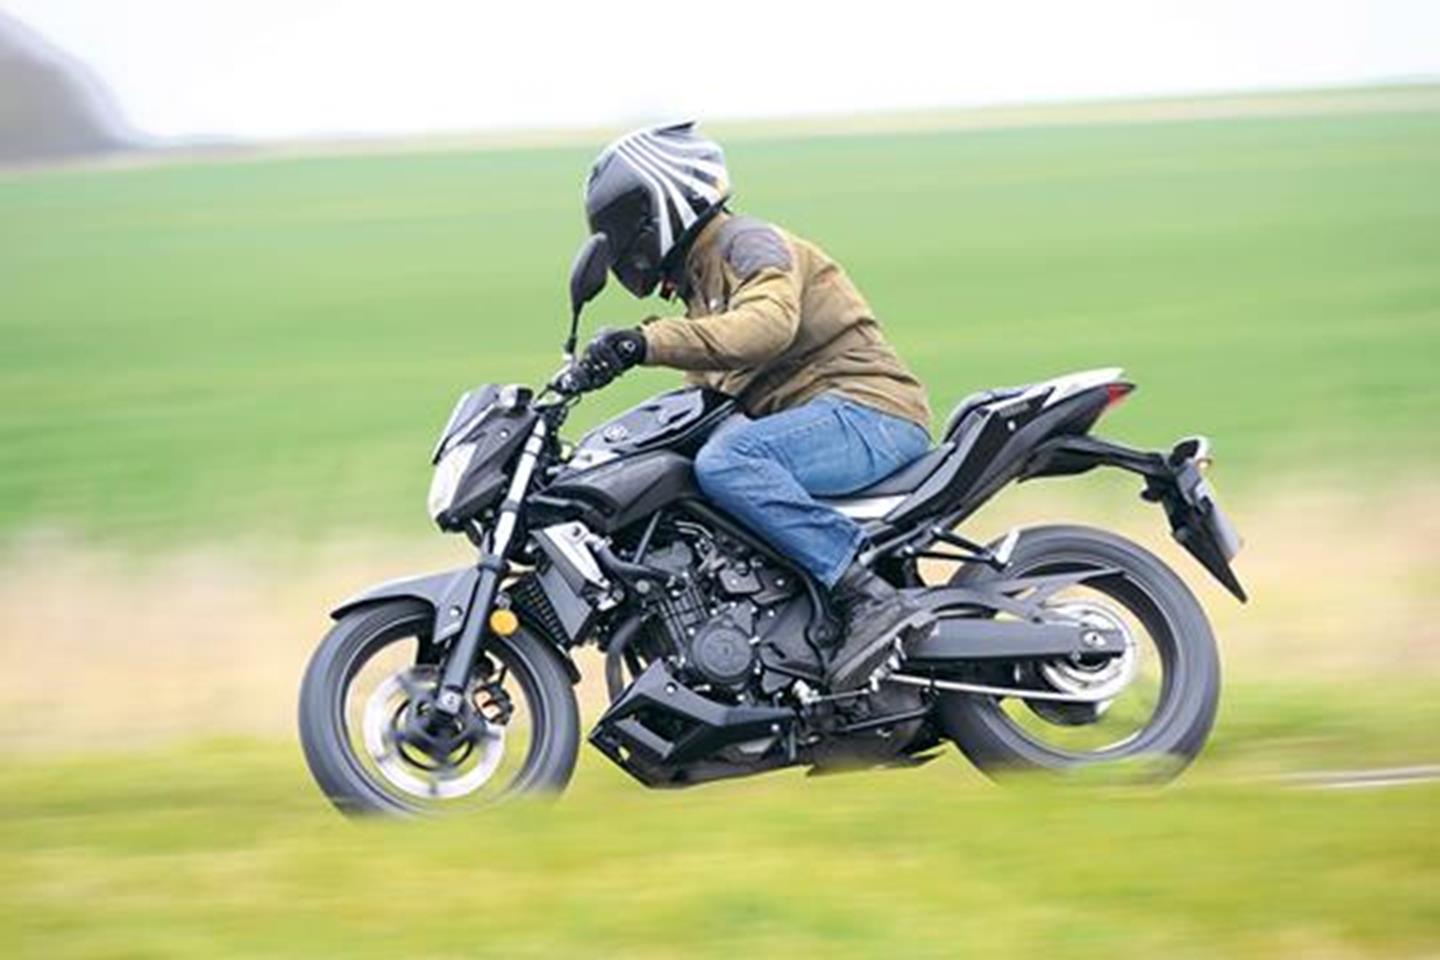 Мотоцикл ямаха mt-07 - легкий и доступный нейкед